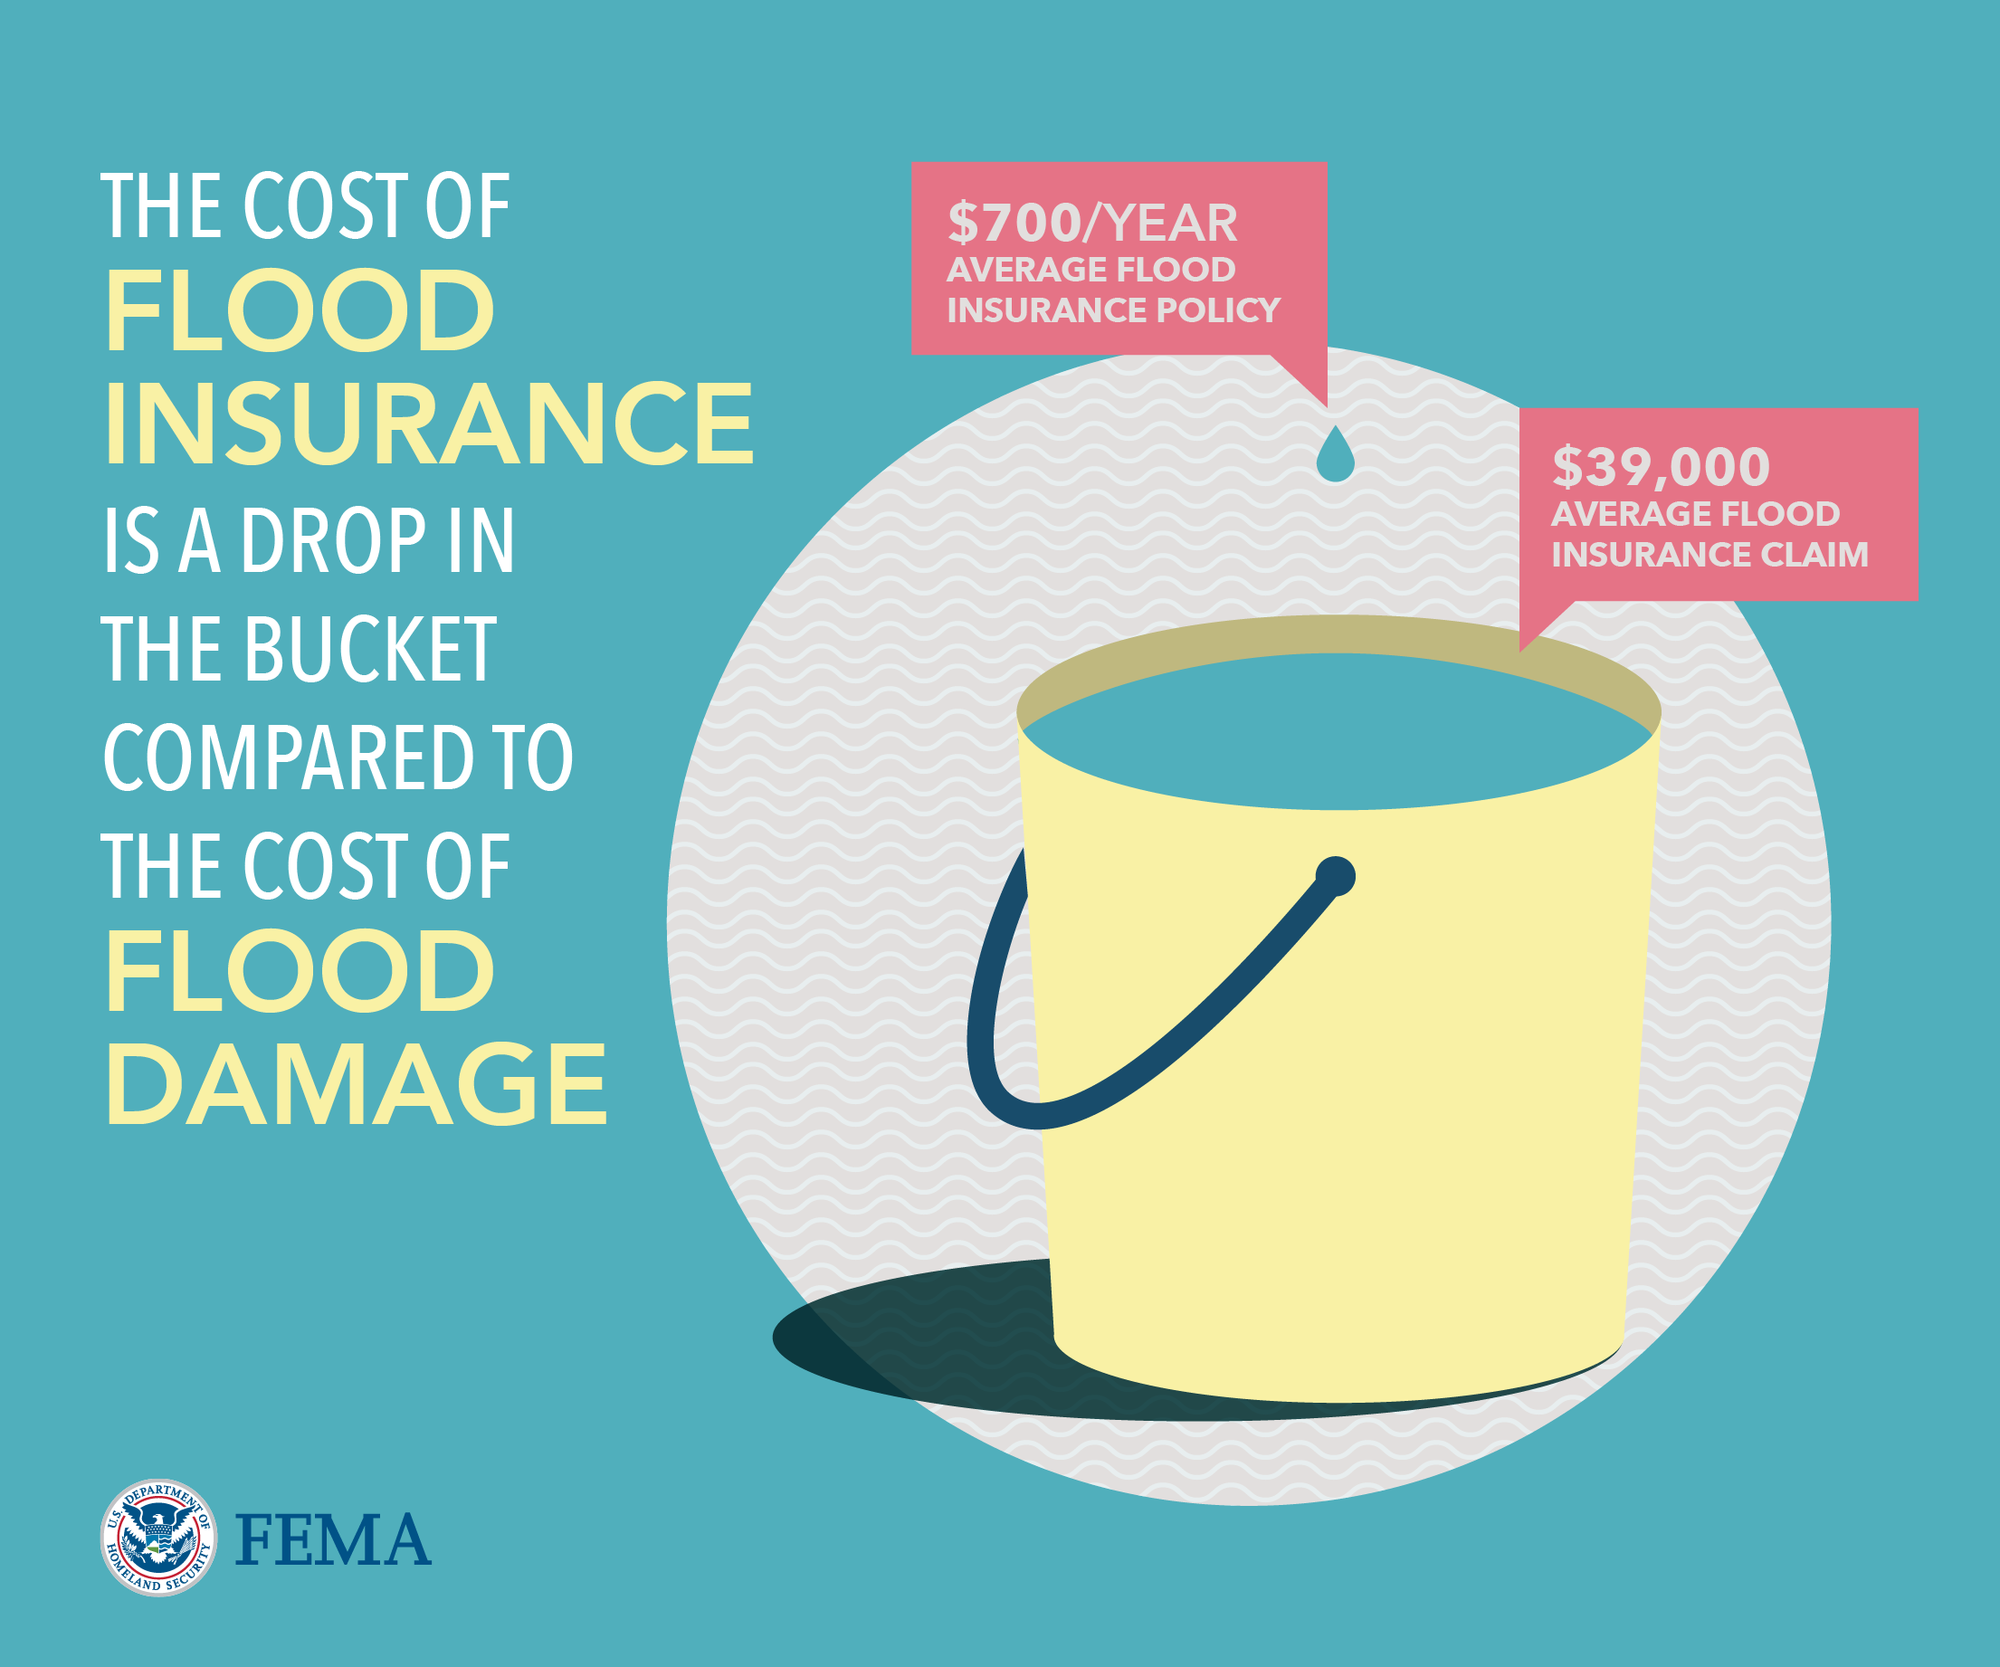 Flood Insurance is a drop in the bucket